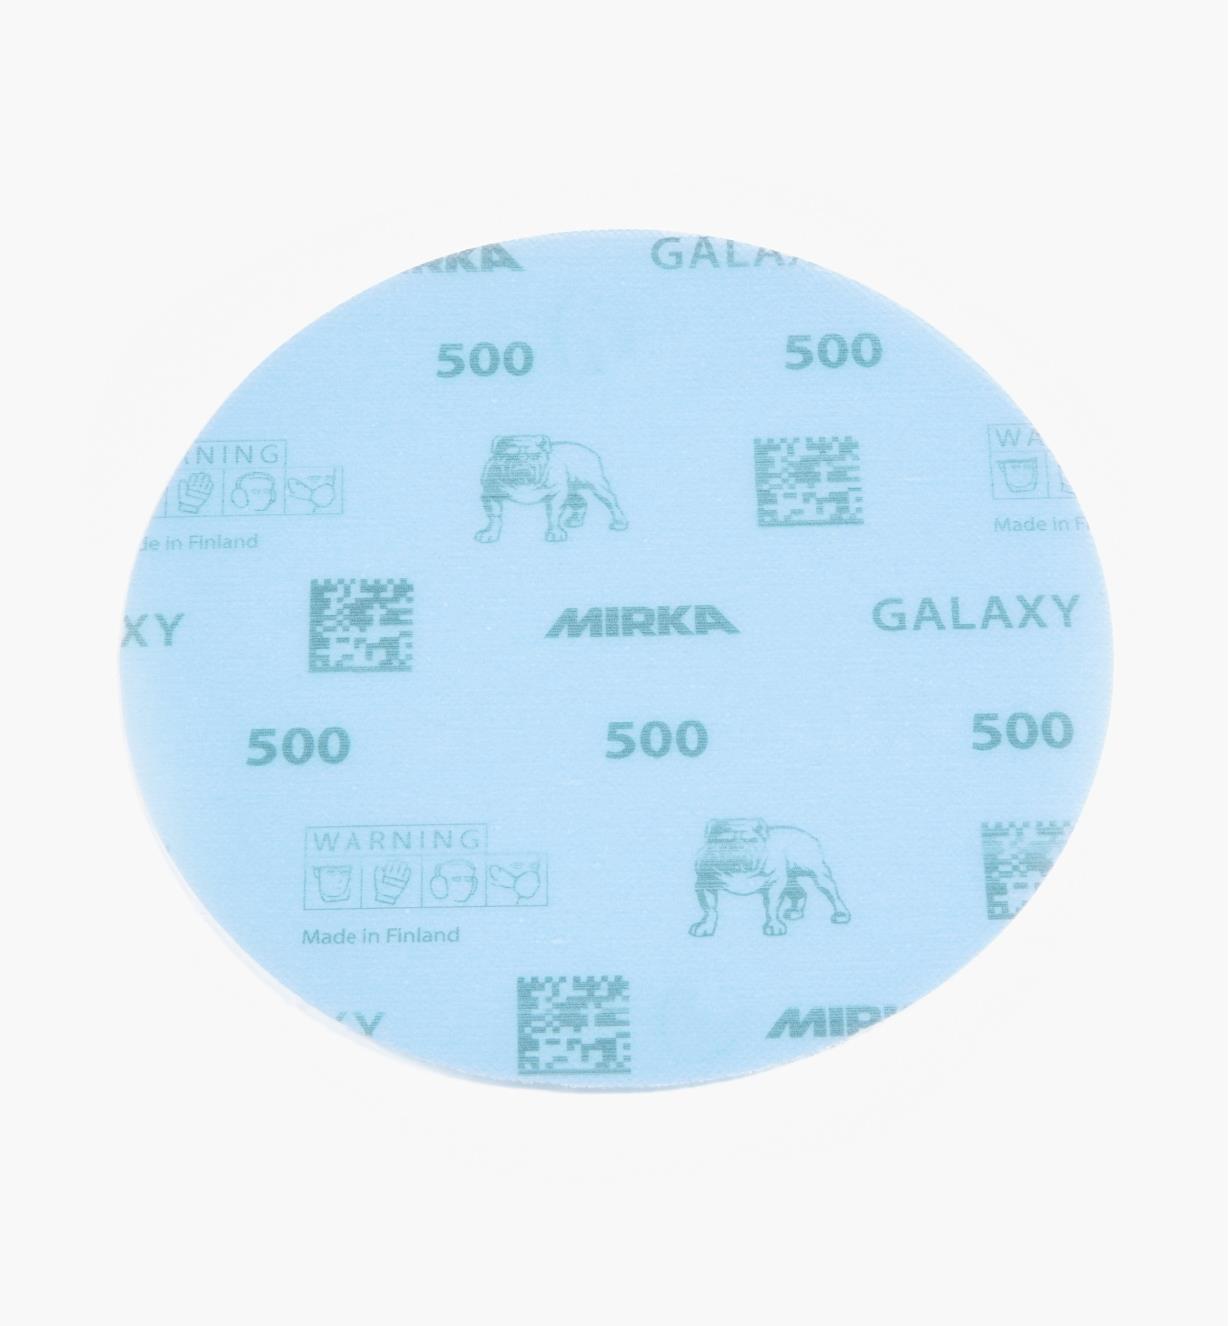 08K2112 - Disque abrasif autoagrippant Galaxy, 6 po, grain 500, l'unité